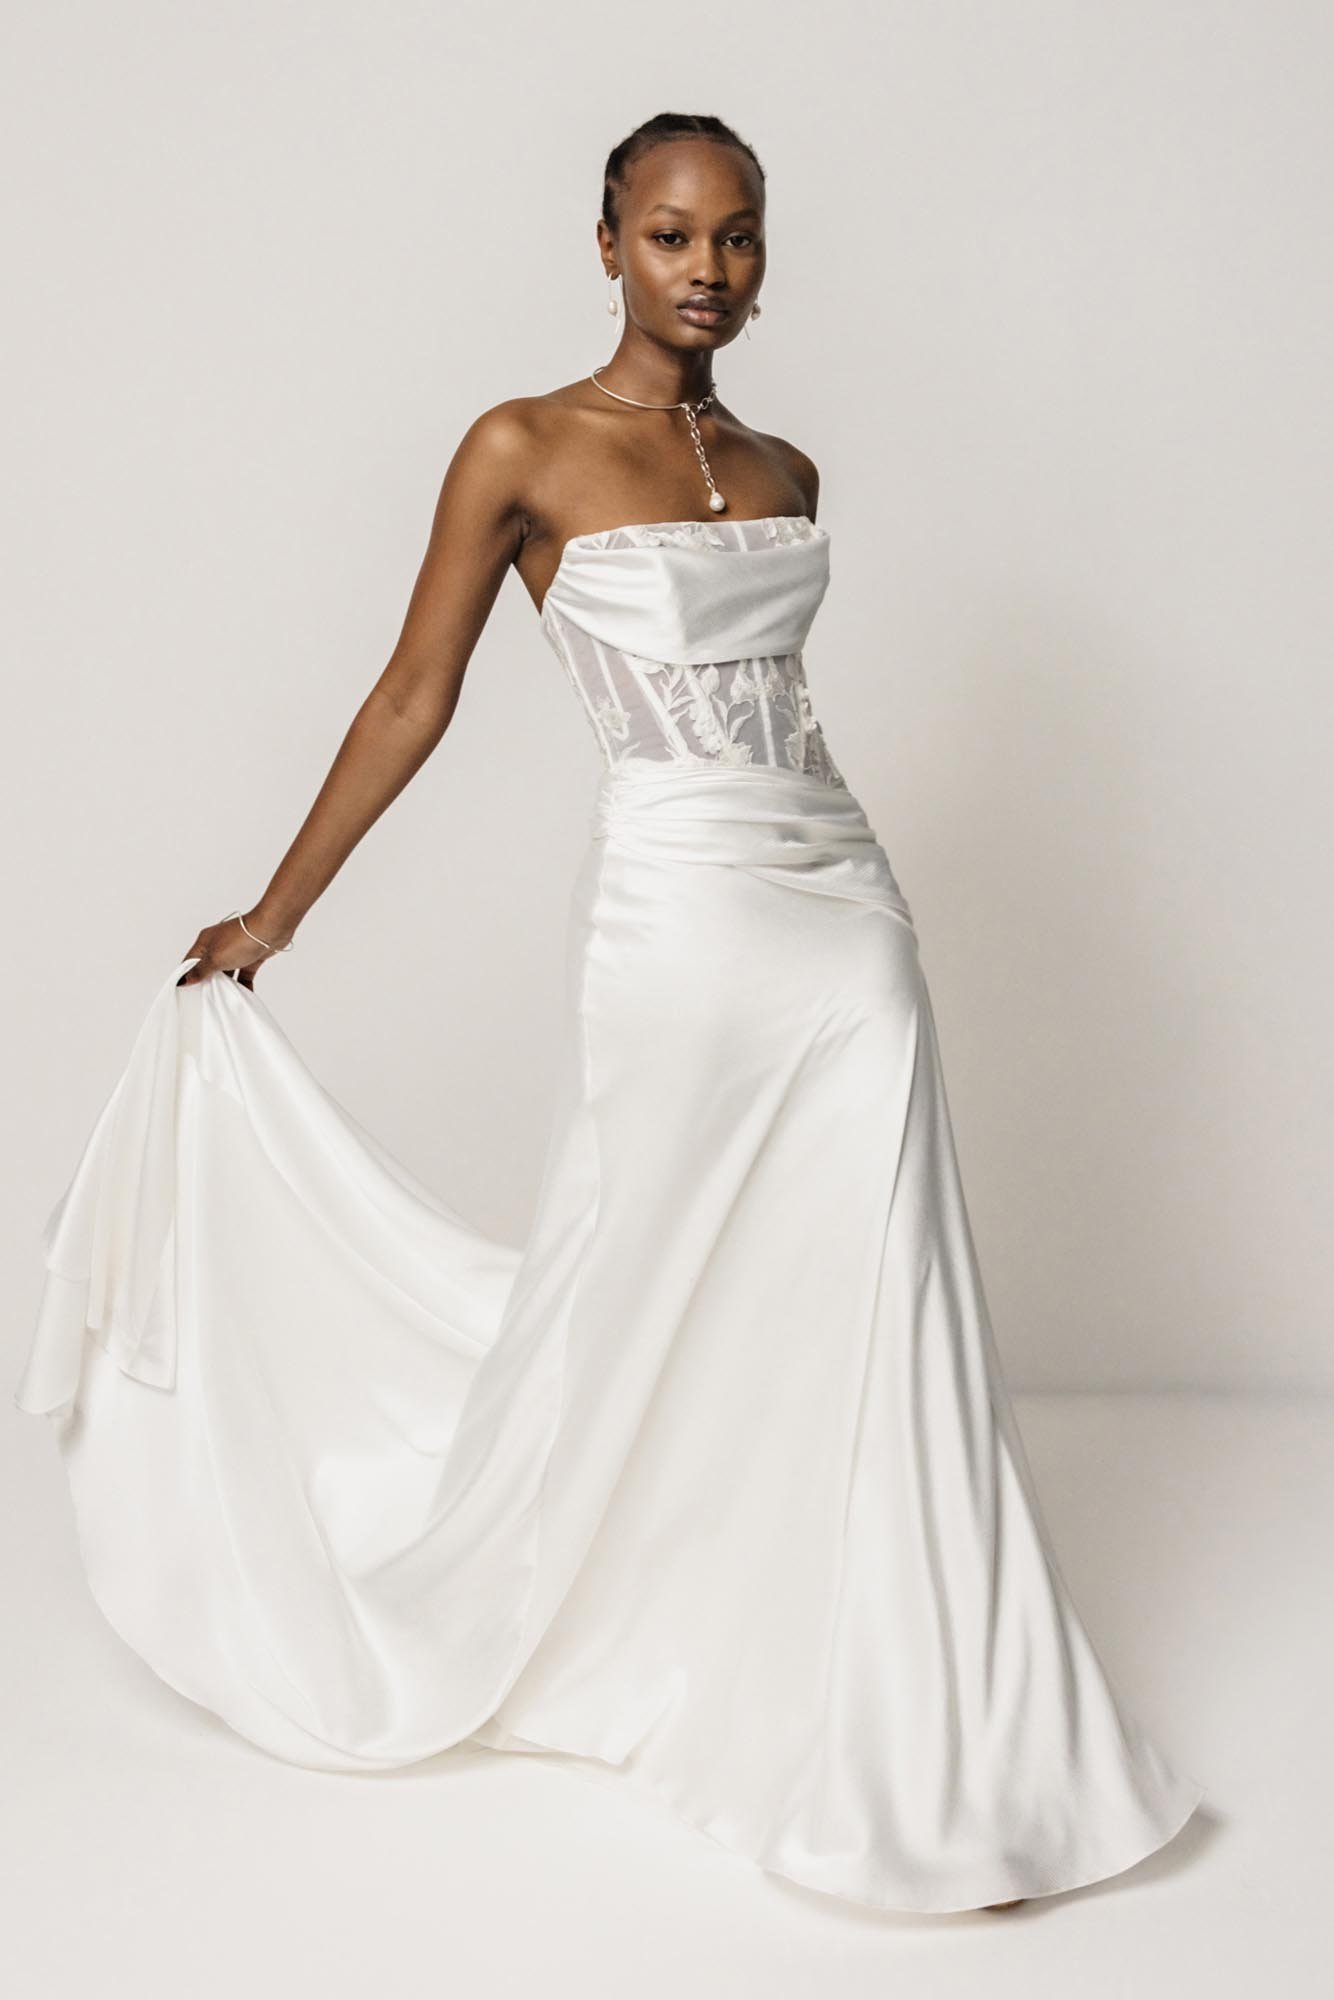 Saint Bridal + Wedding Dresses｜a&bé bridal shop